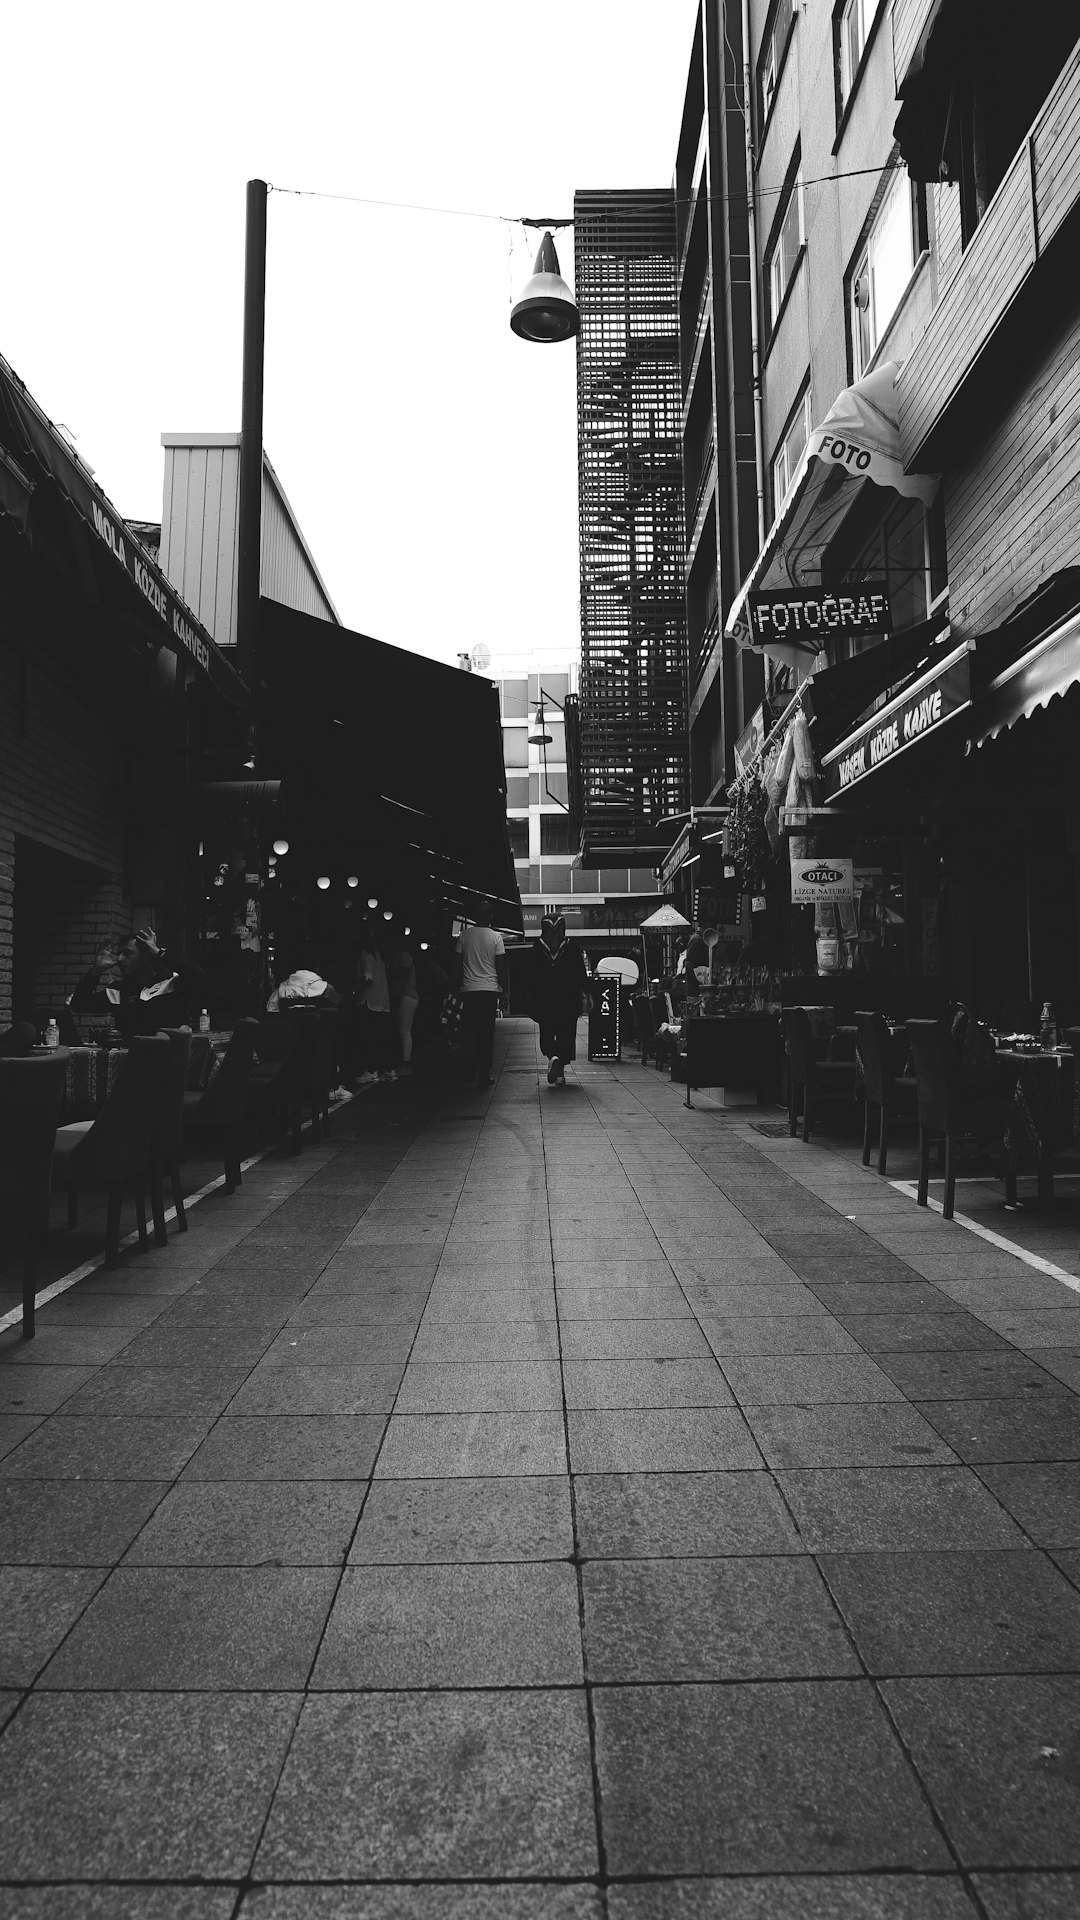 grayscale photo of people walking on sidewalk near buildings